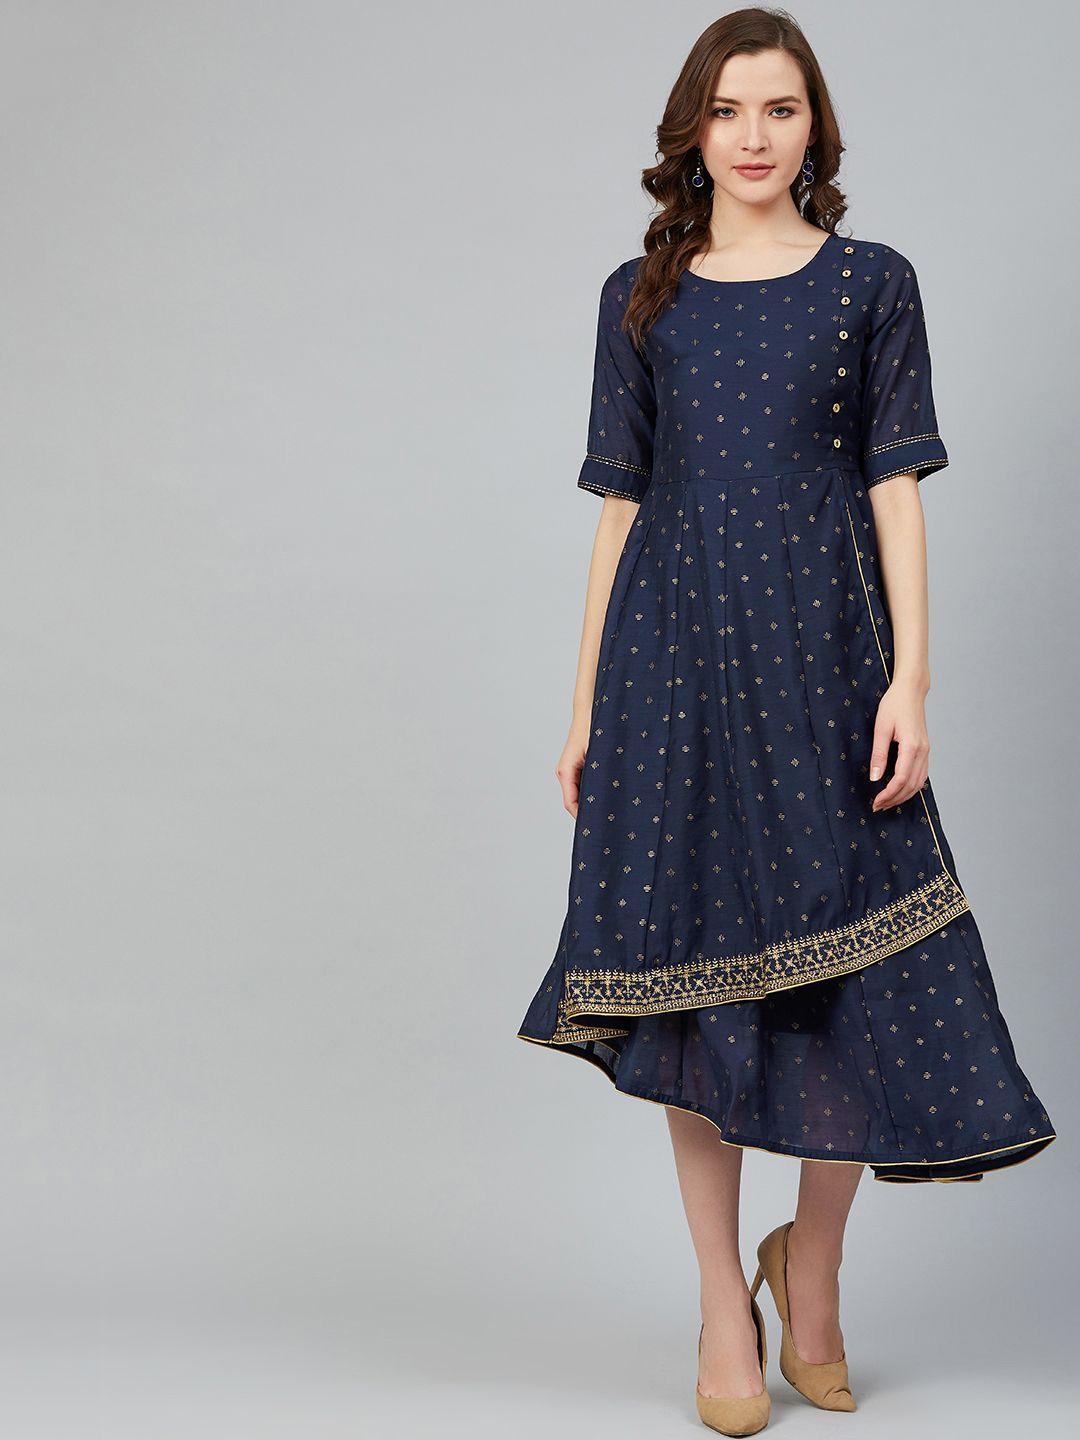 rangriti women navy blue & golden printed layered a-line dress